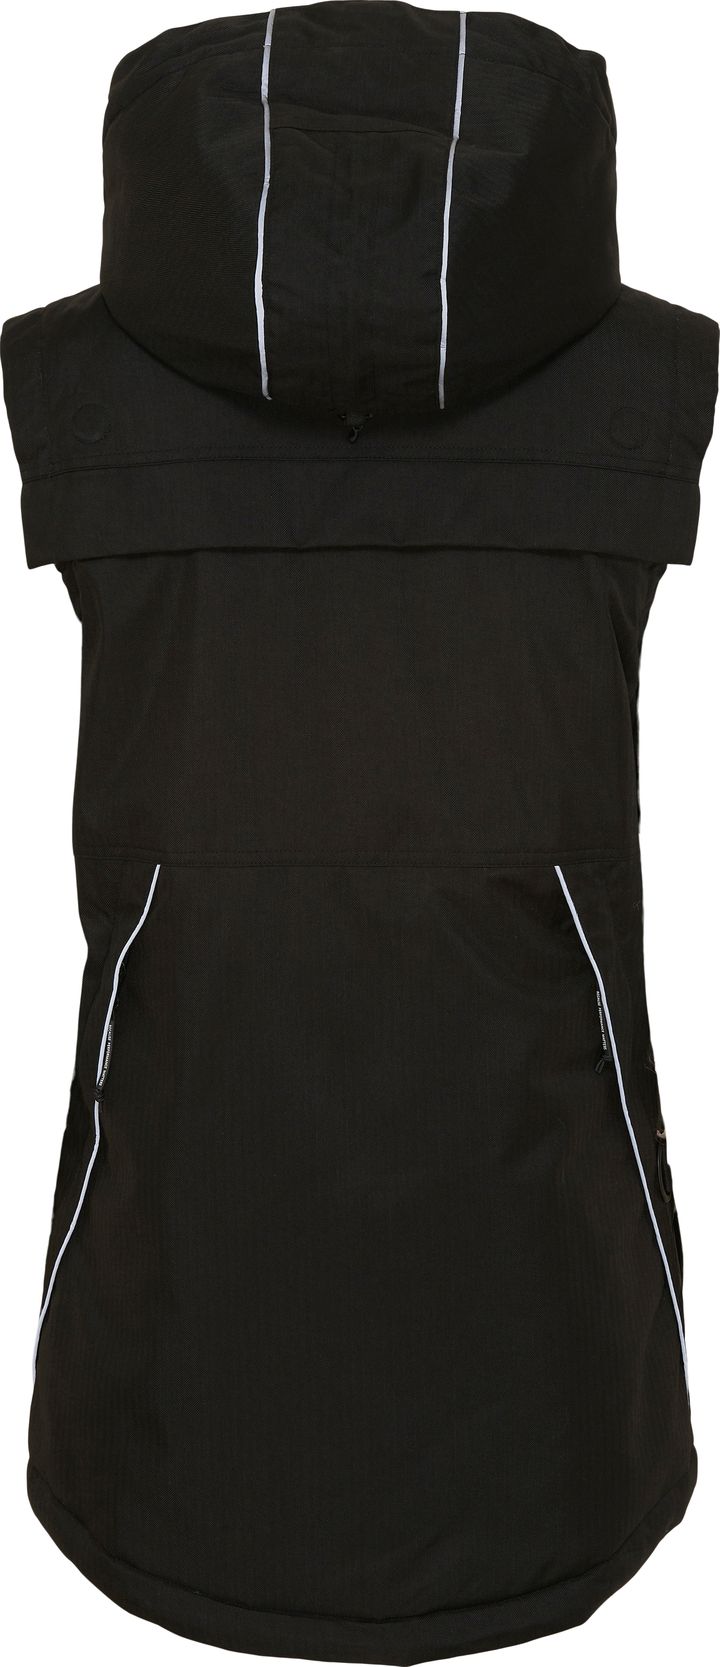 Unisex Trainer Winter Vest Black Catago